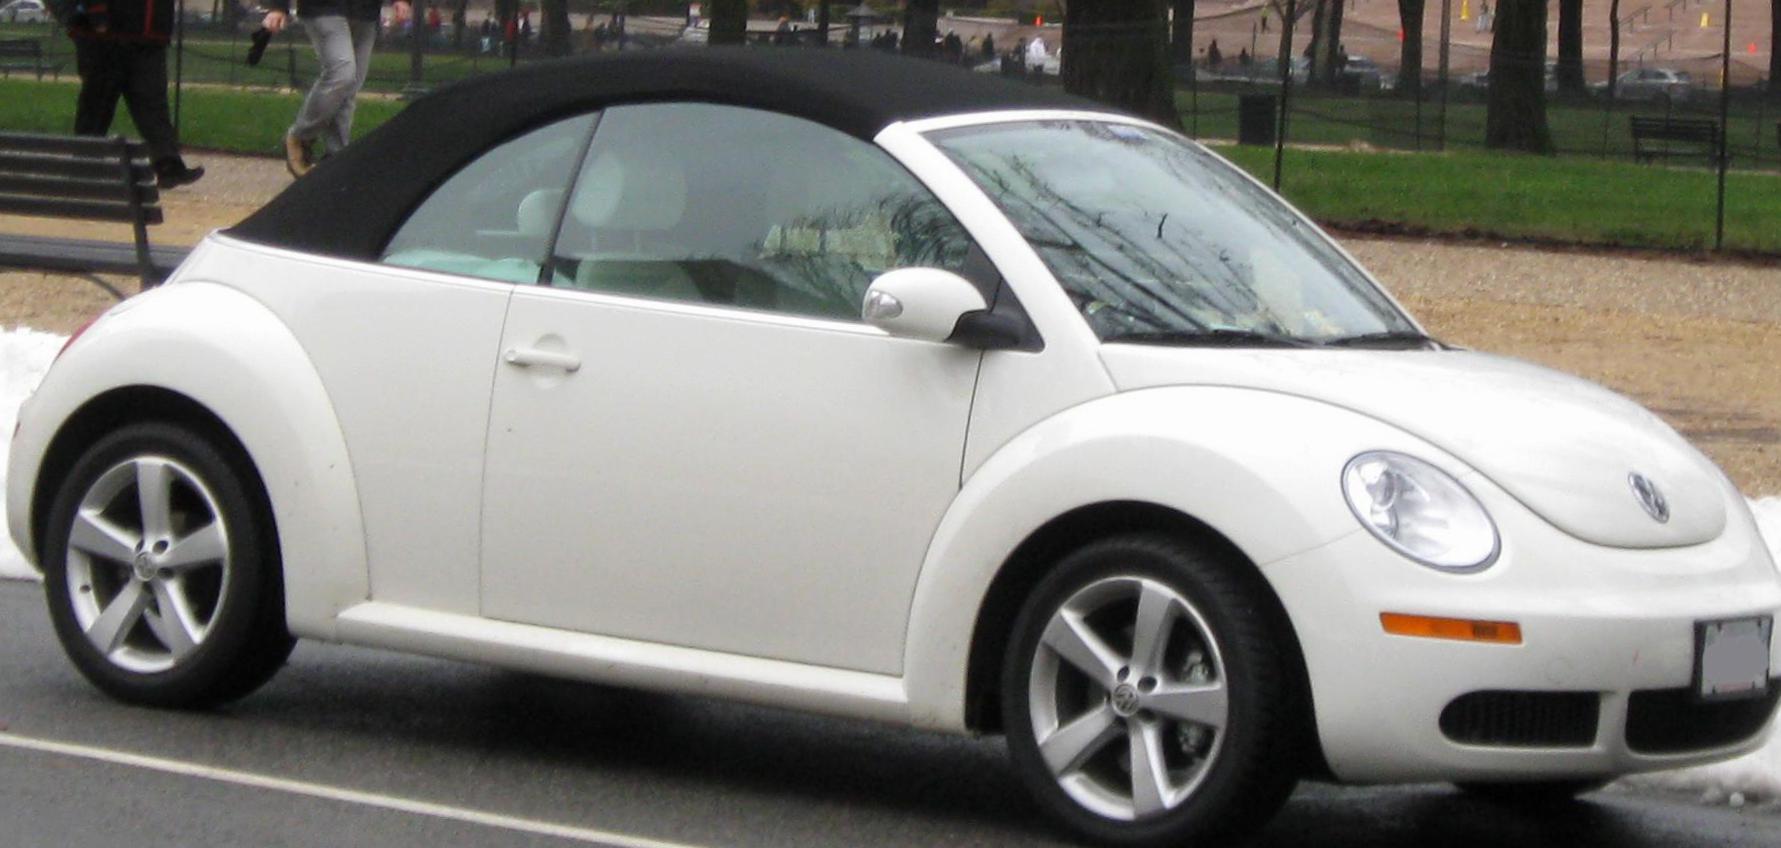 New Beetle Volkswagen concept 2006